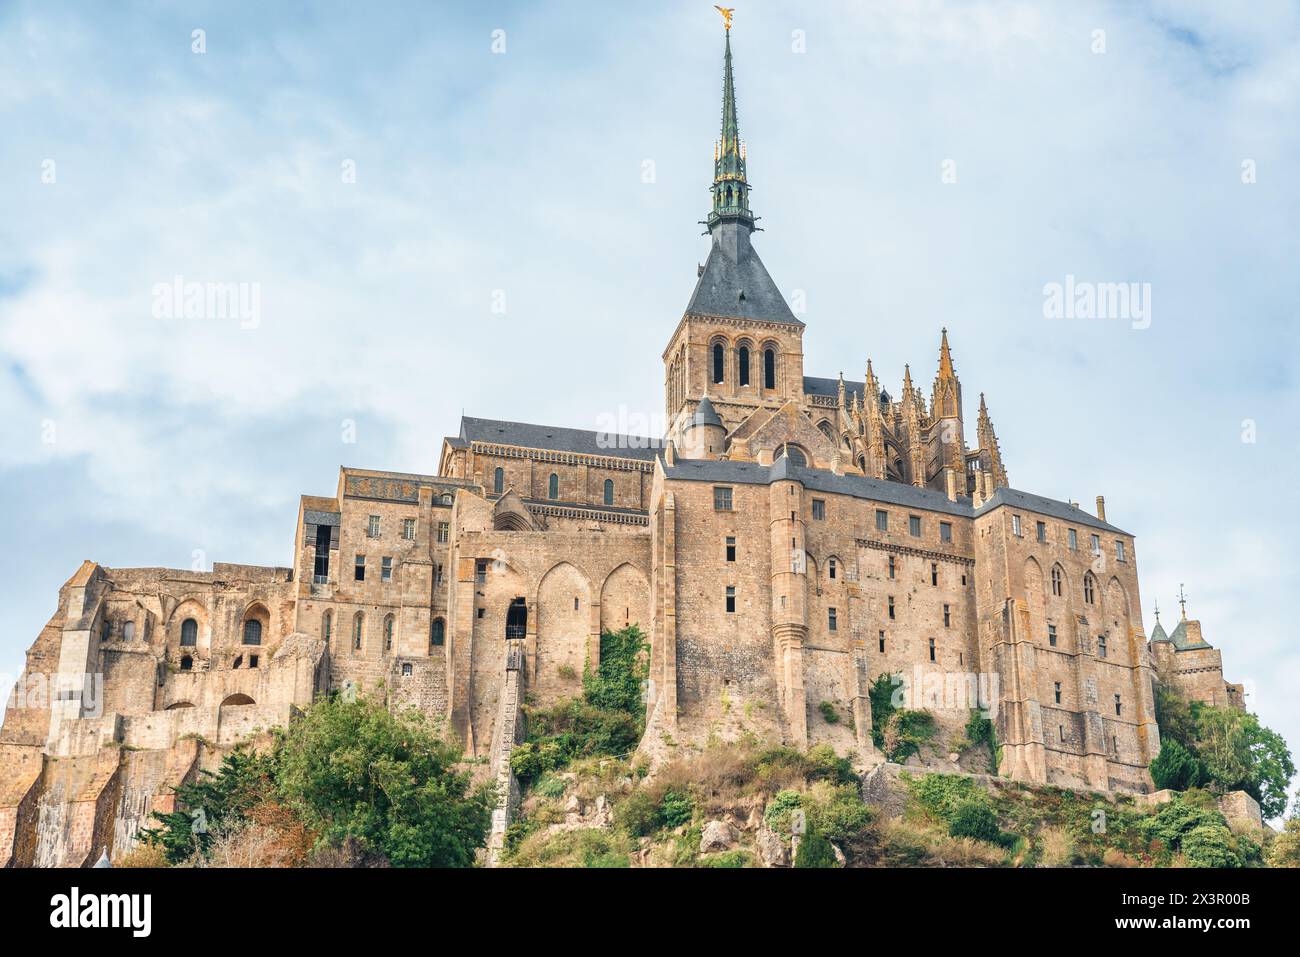 Castello gotico di Mont Saint Michel con abbazia sull'isola, Normandia, Francia settentrionale, Europa. Isola di marea con cattedrale gotica medievale in Foto Stock